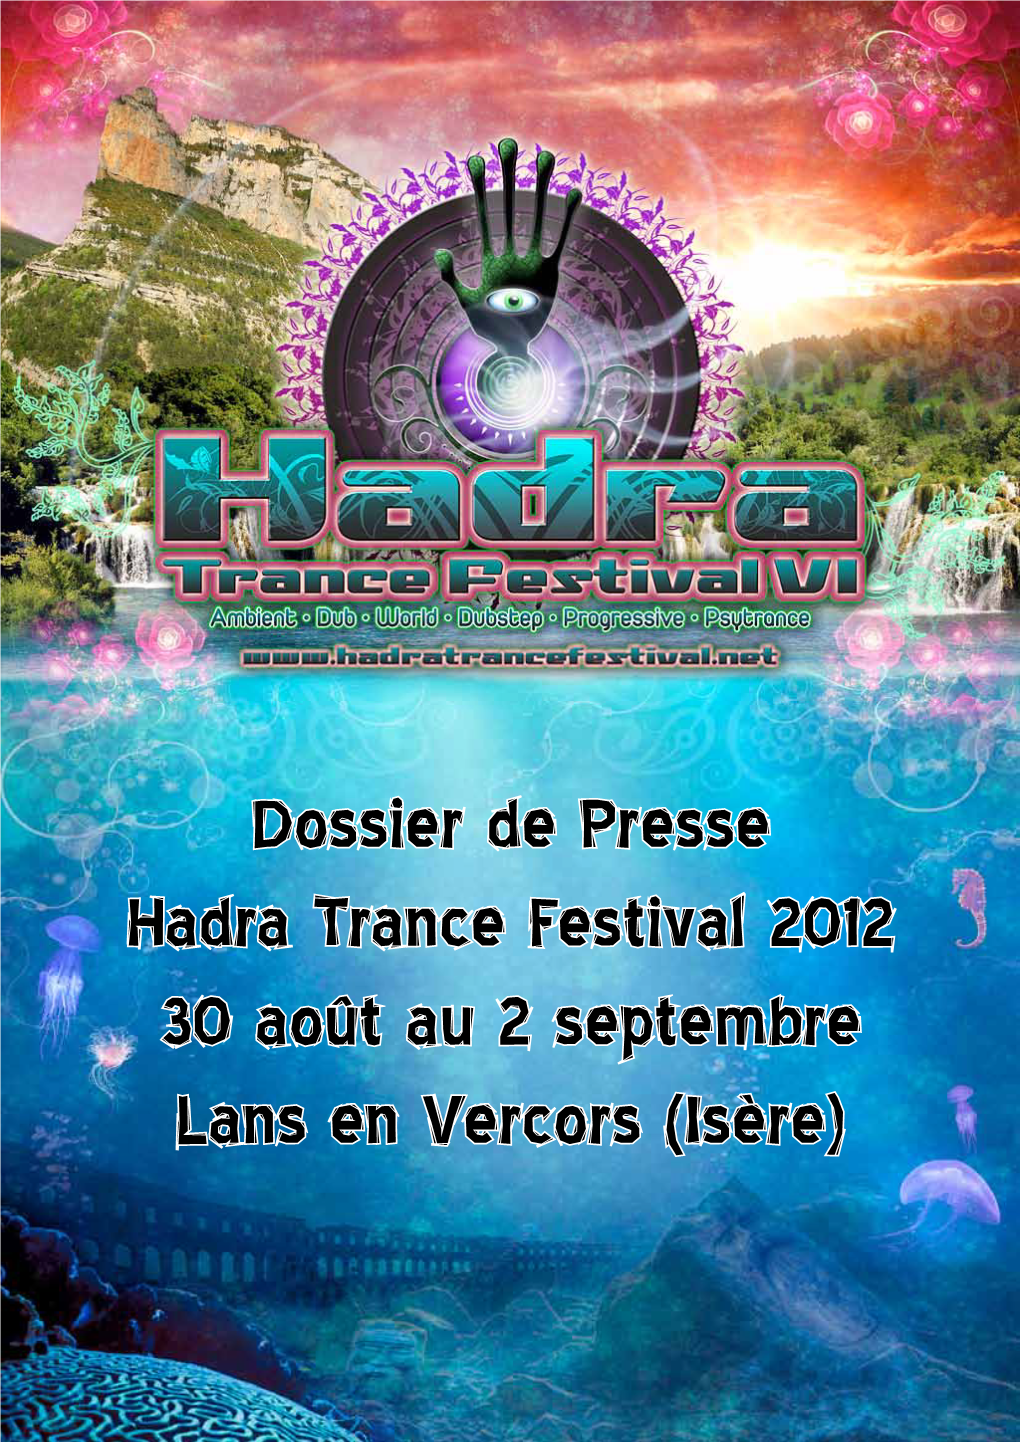 Dossier De Presse Hadra Trance Festival 2012 30 Août Au 2 Septembre Lans En Vercors (Isère)